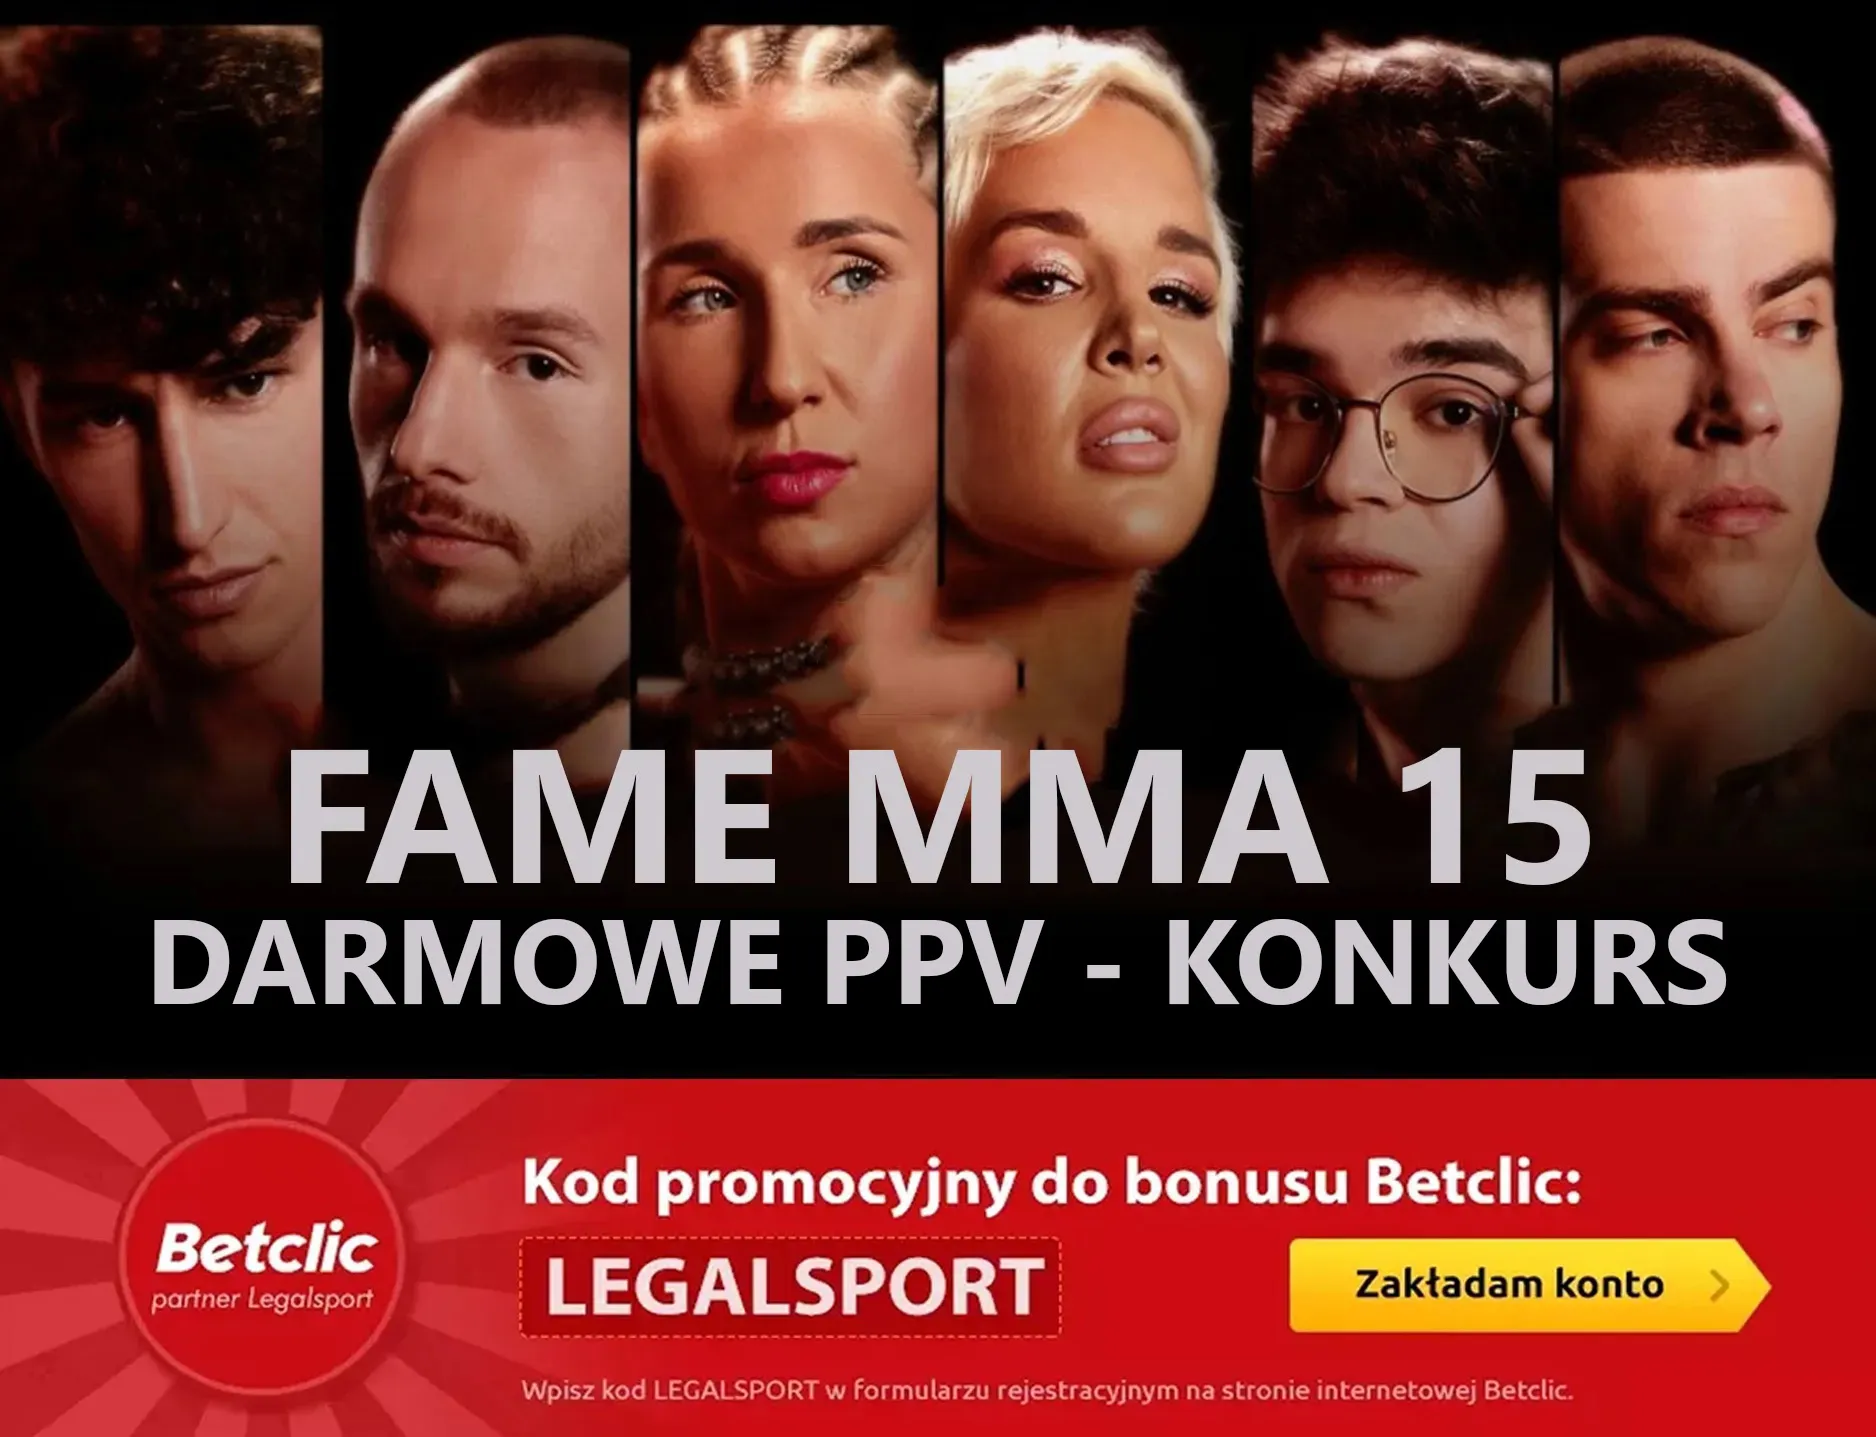 Darmowe PPV na FAME MMA 15 - konkurs dla typerów